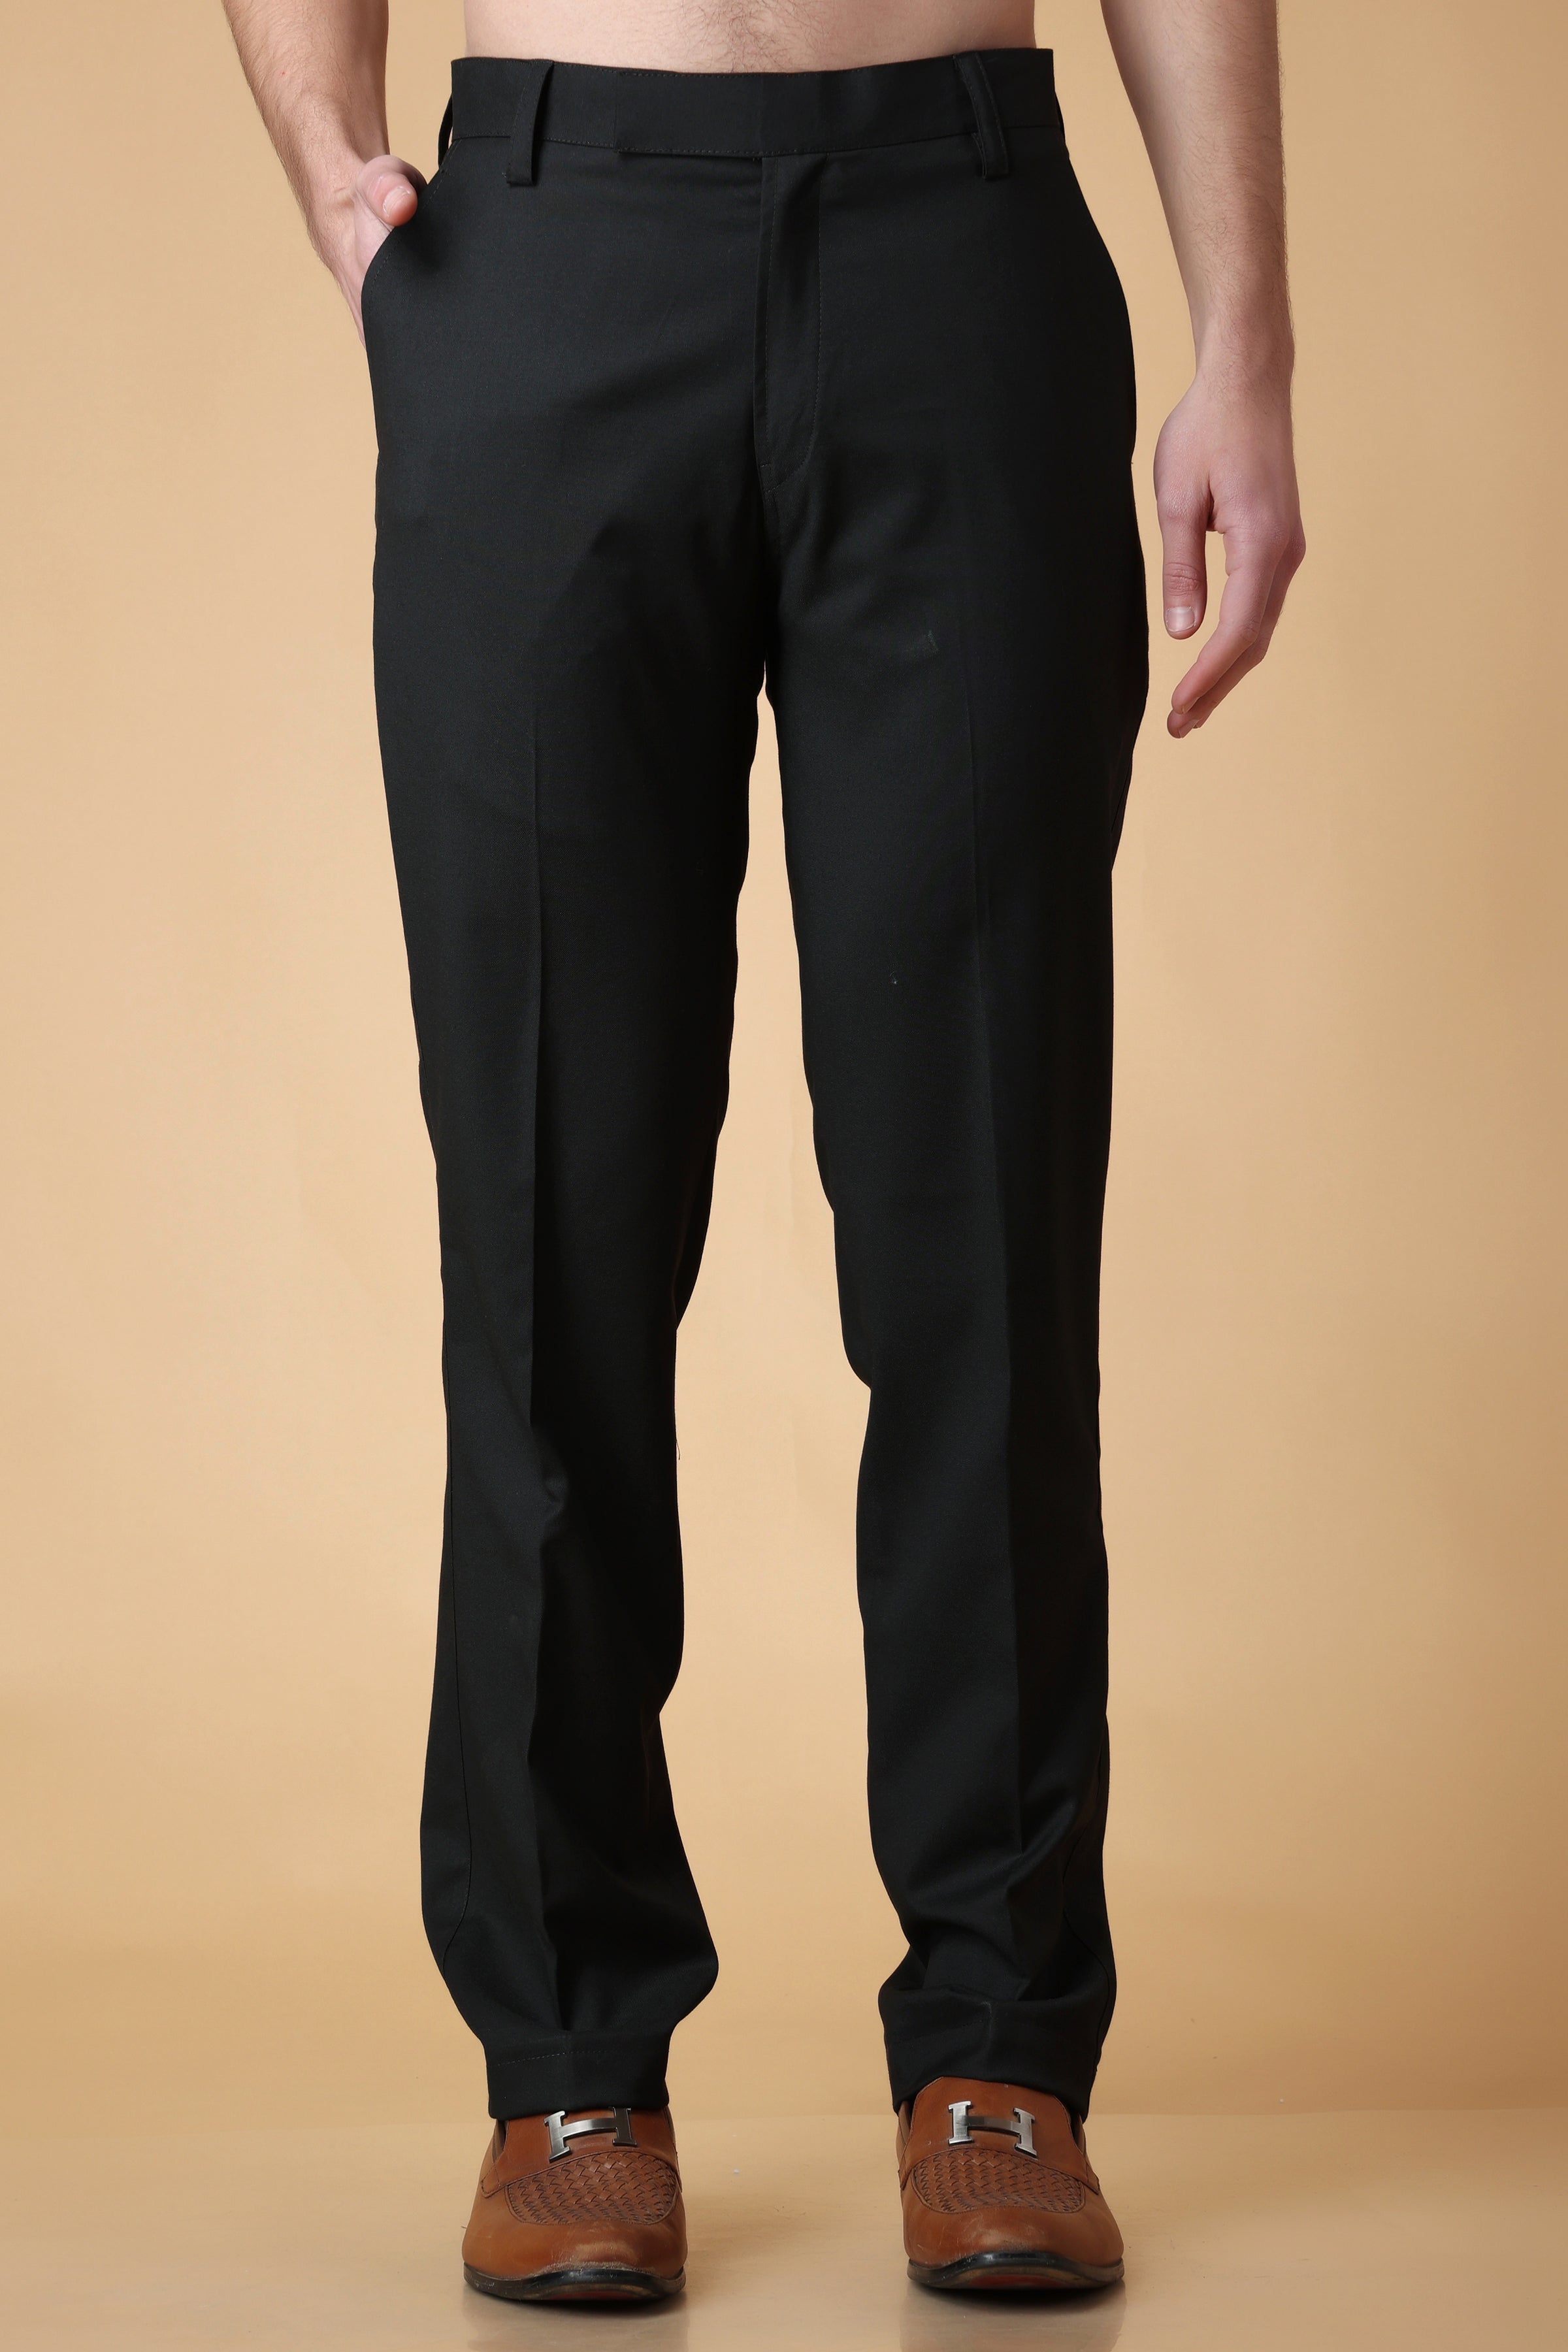 RGM Mens Modern Fit Skinny Dress Pant Black 40x28 - Walmart.com